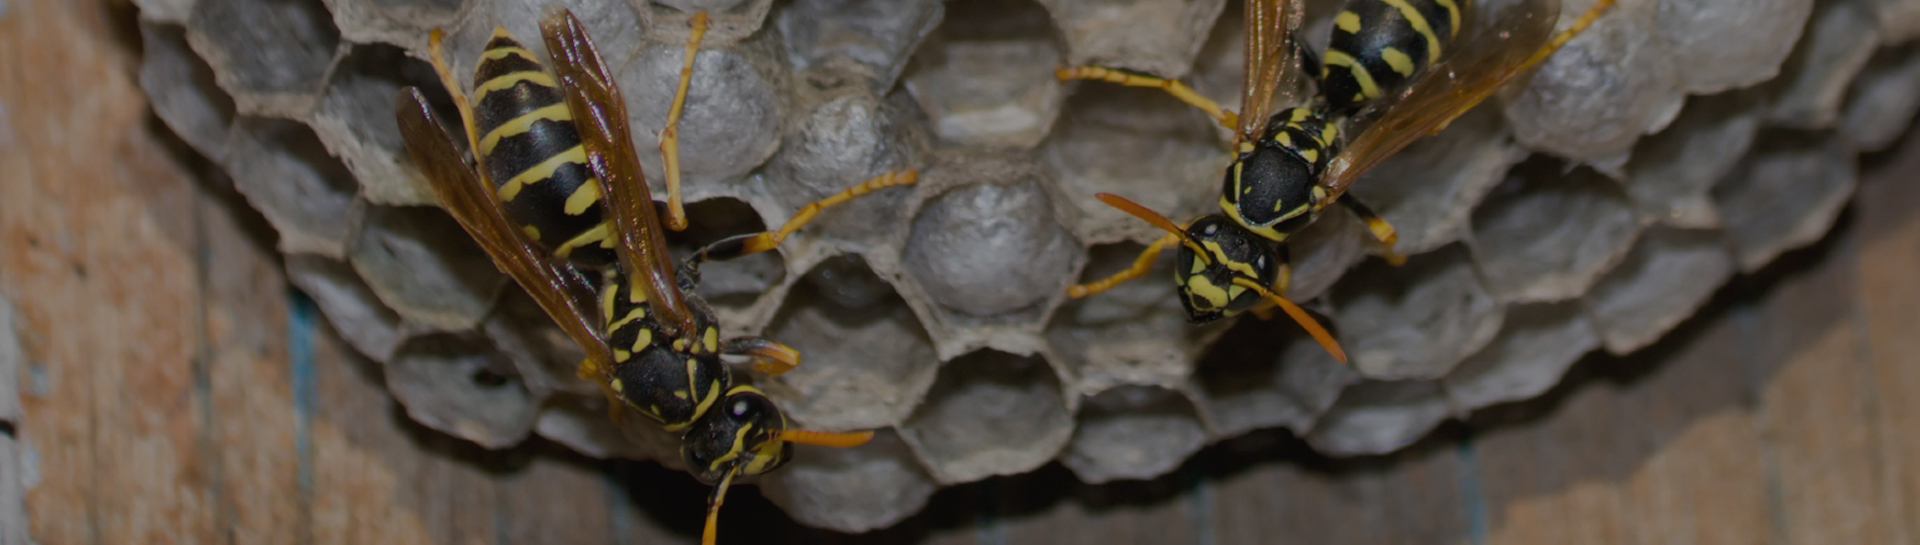 Wasp Nest in Chimney | Killing Wasps in Chimney